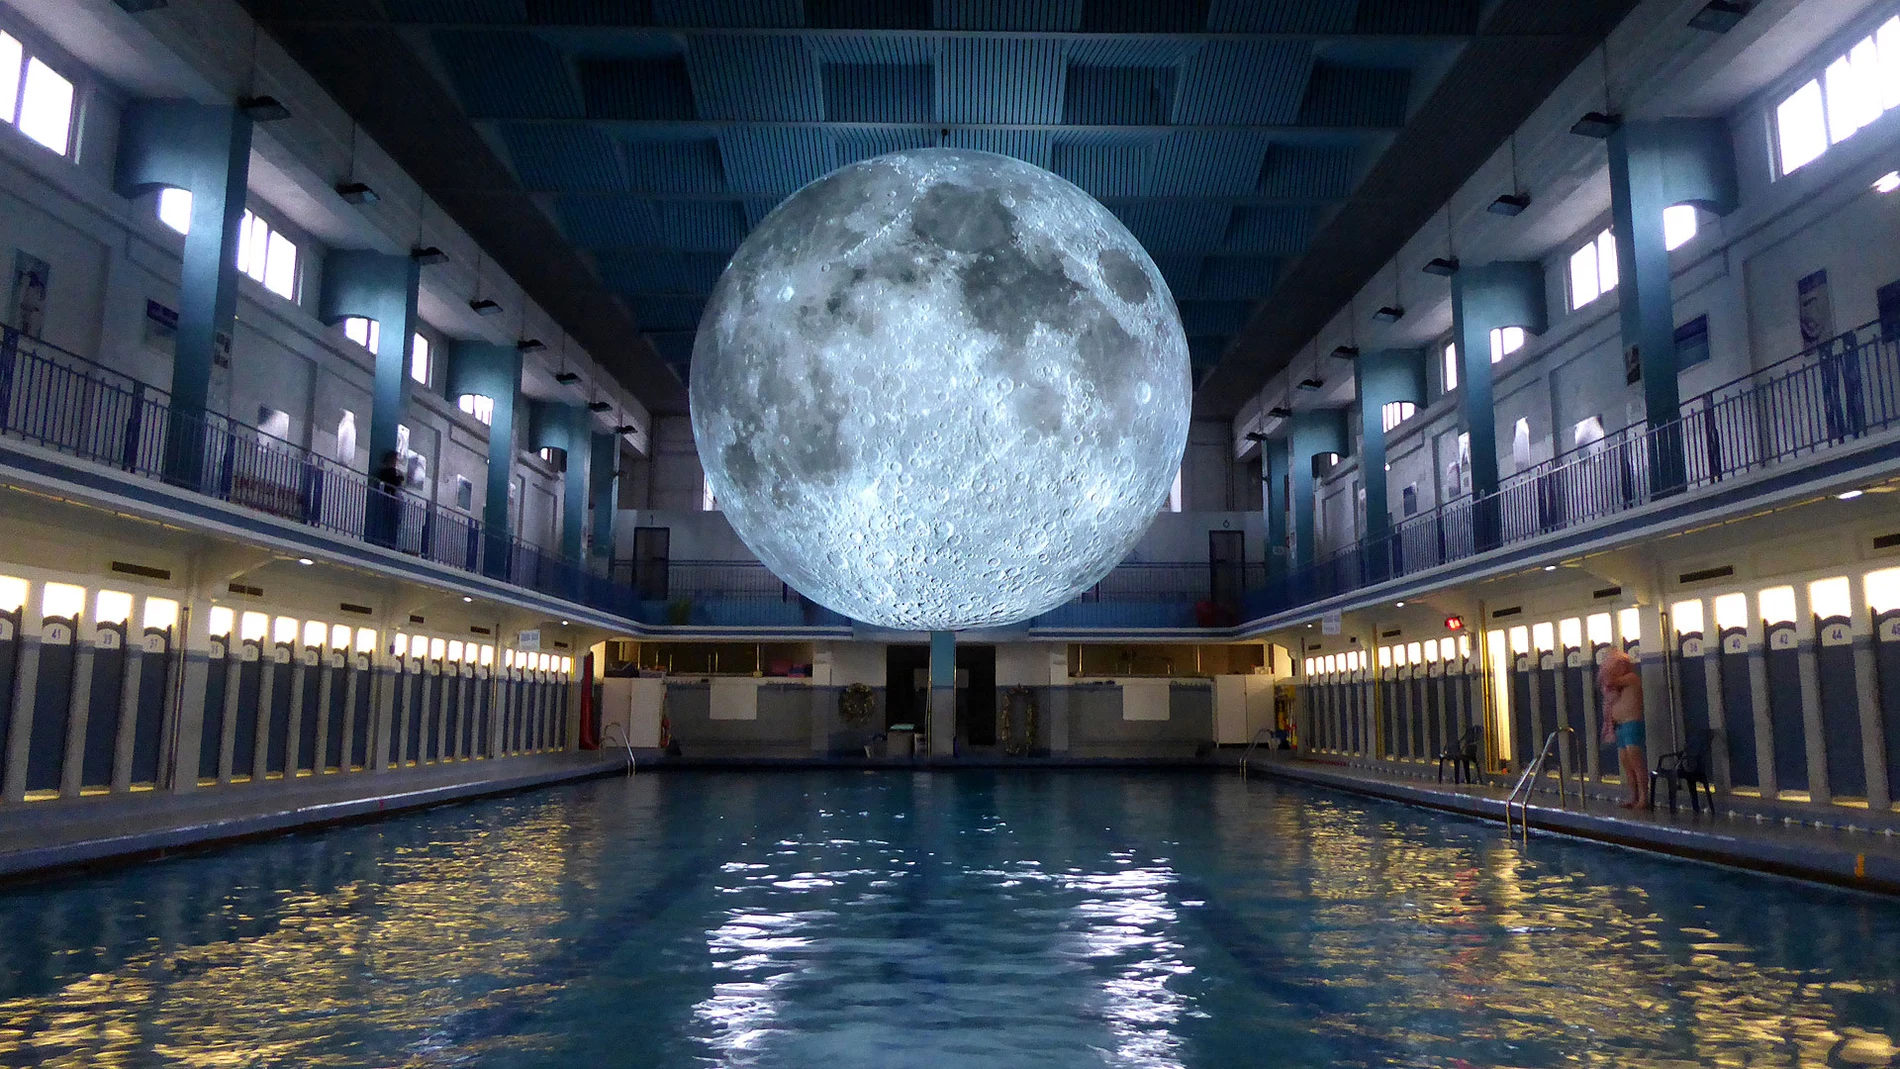 La luna siempre ha sido objeto de fascinación para artistas y lunáticos